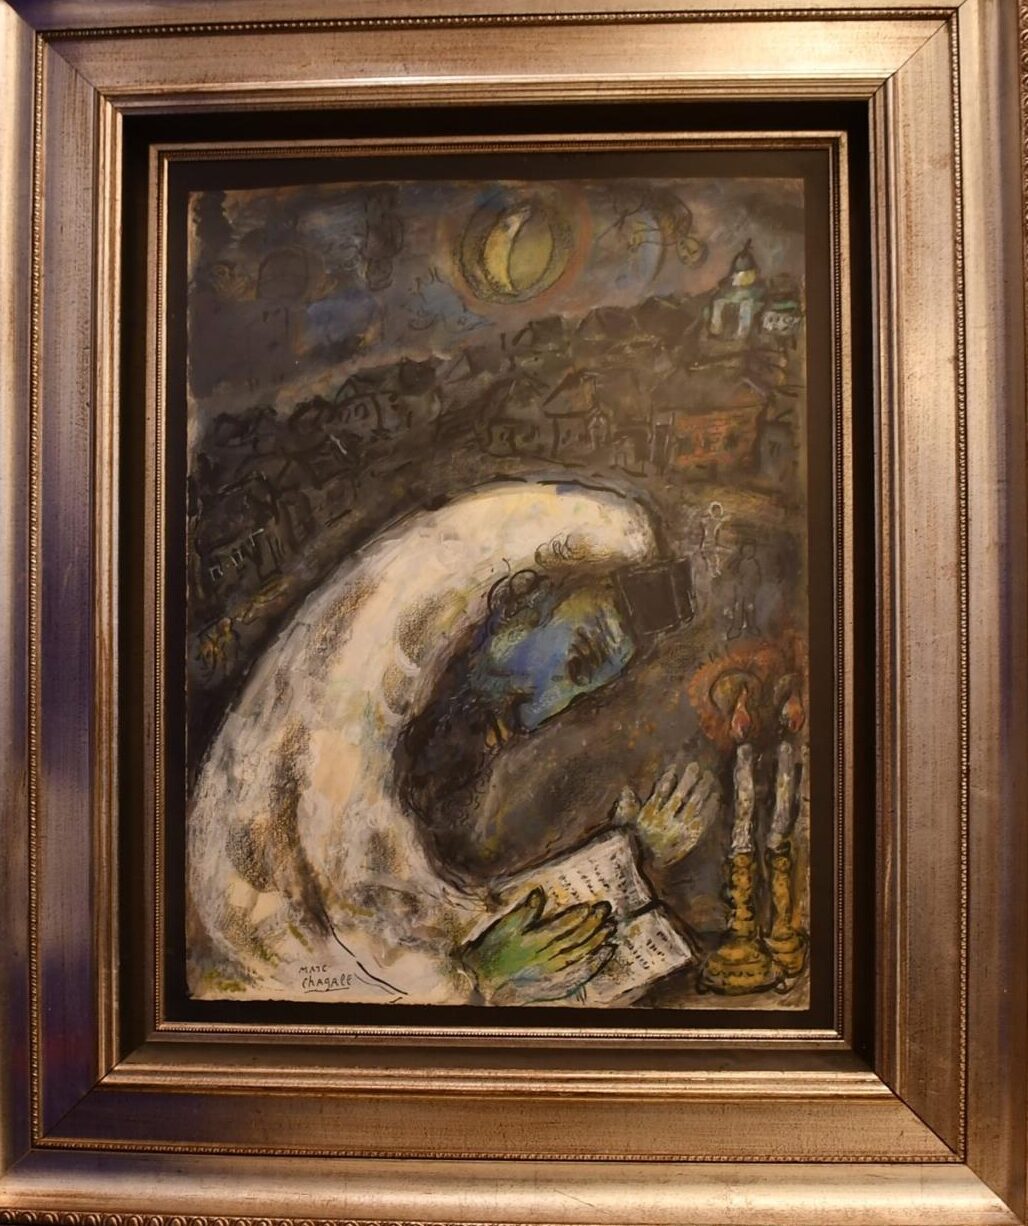 The stolen Marc Chagall painting “L’homme en prière” (1971)